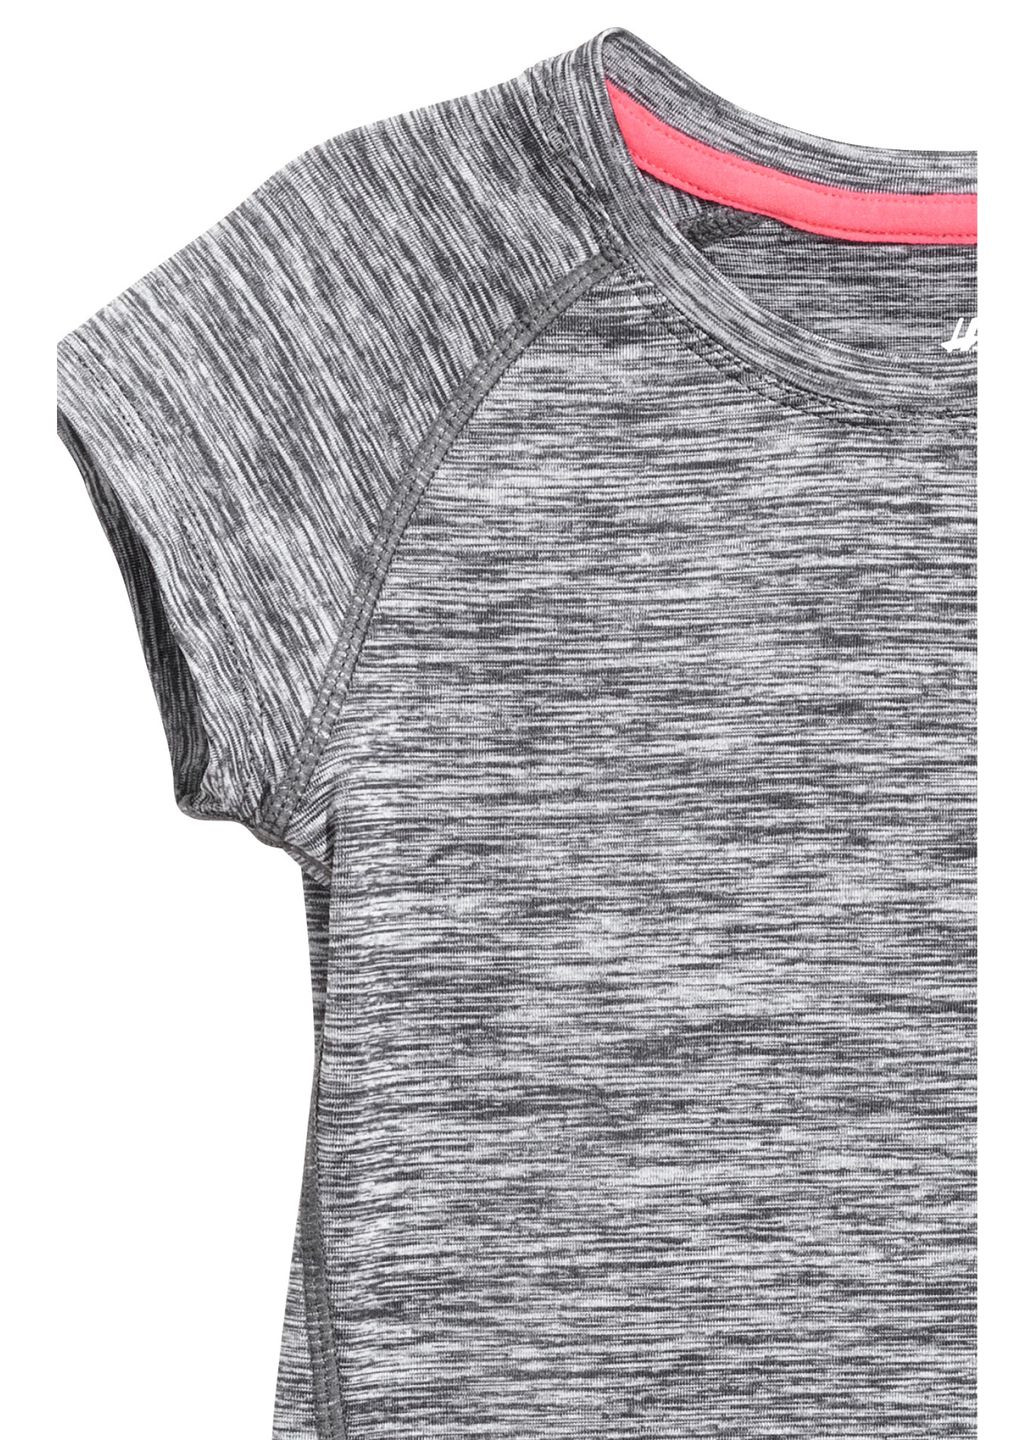 Серая футболка sport,серый, H&M